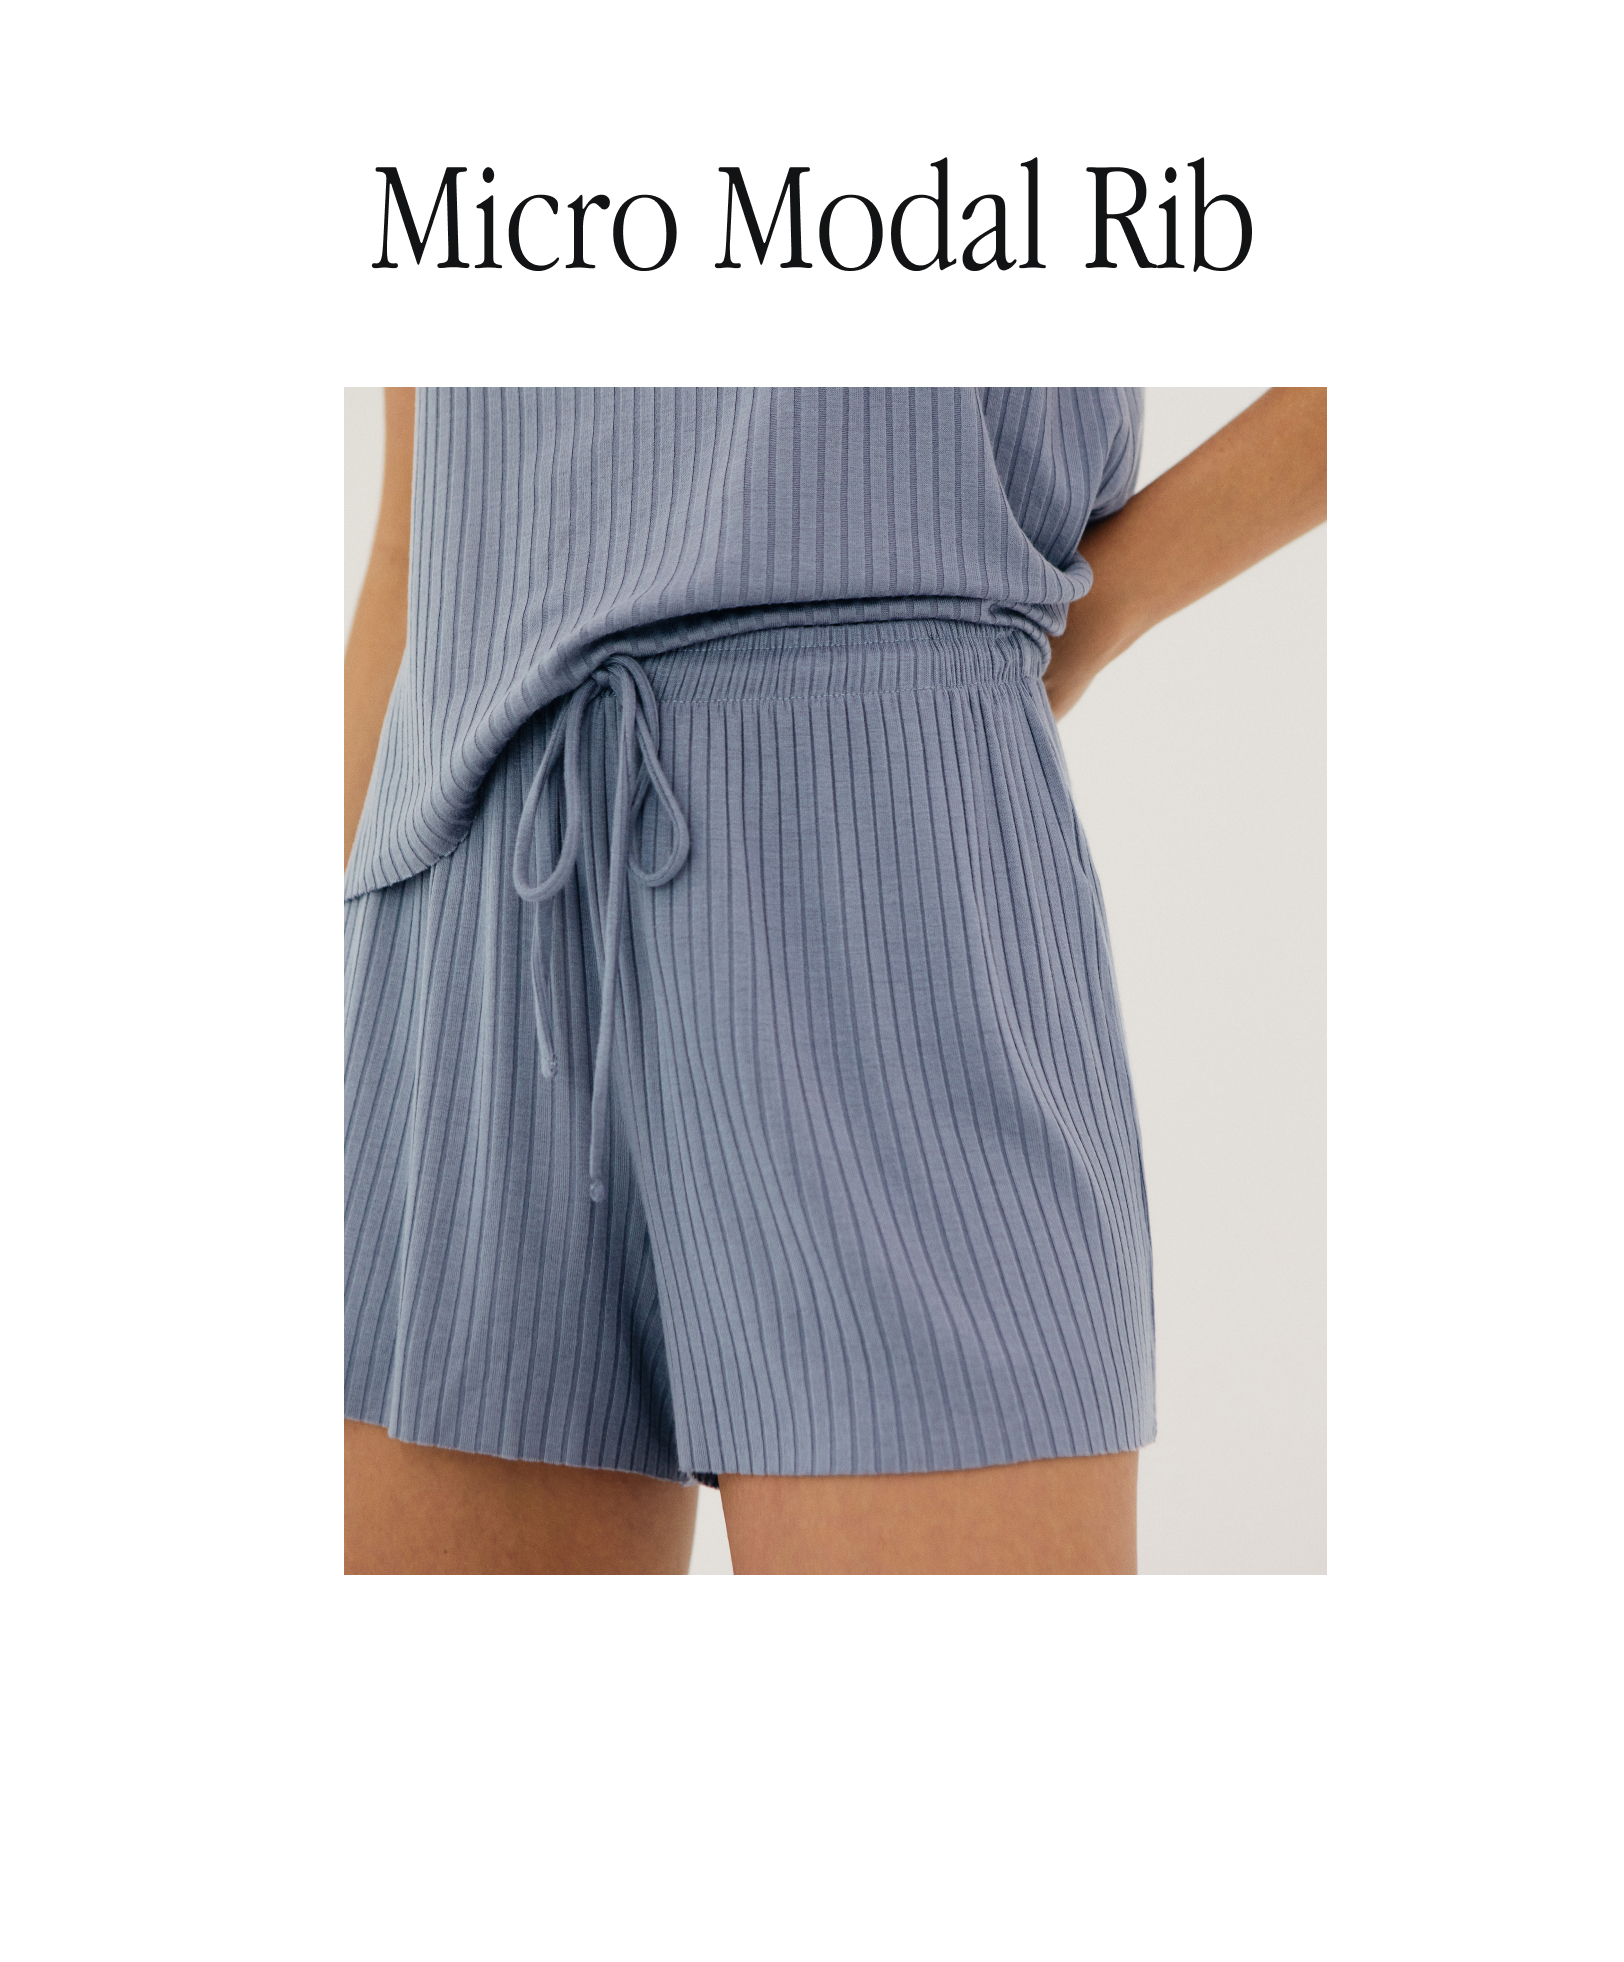 Shorts van micromodal en ribstof